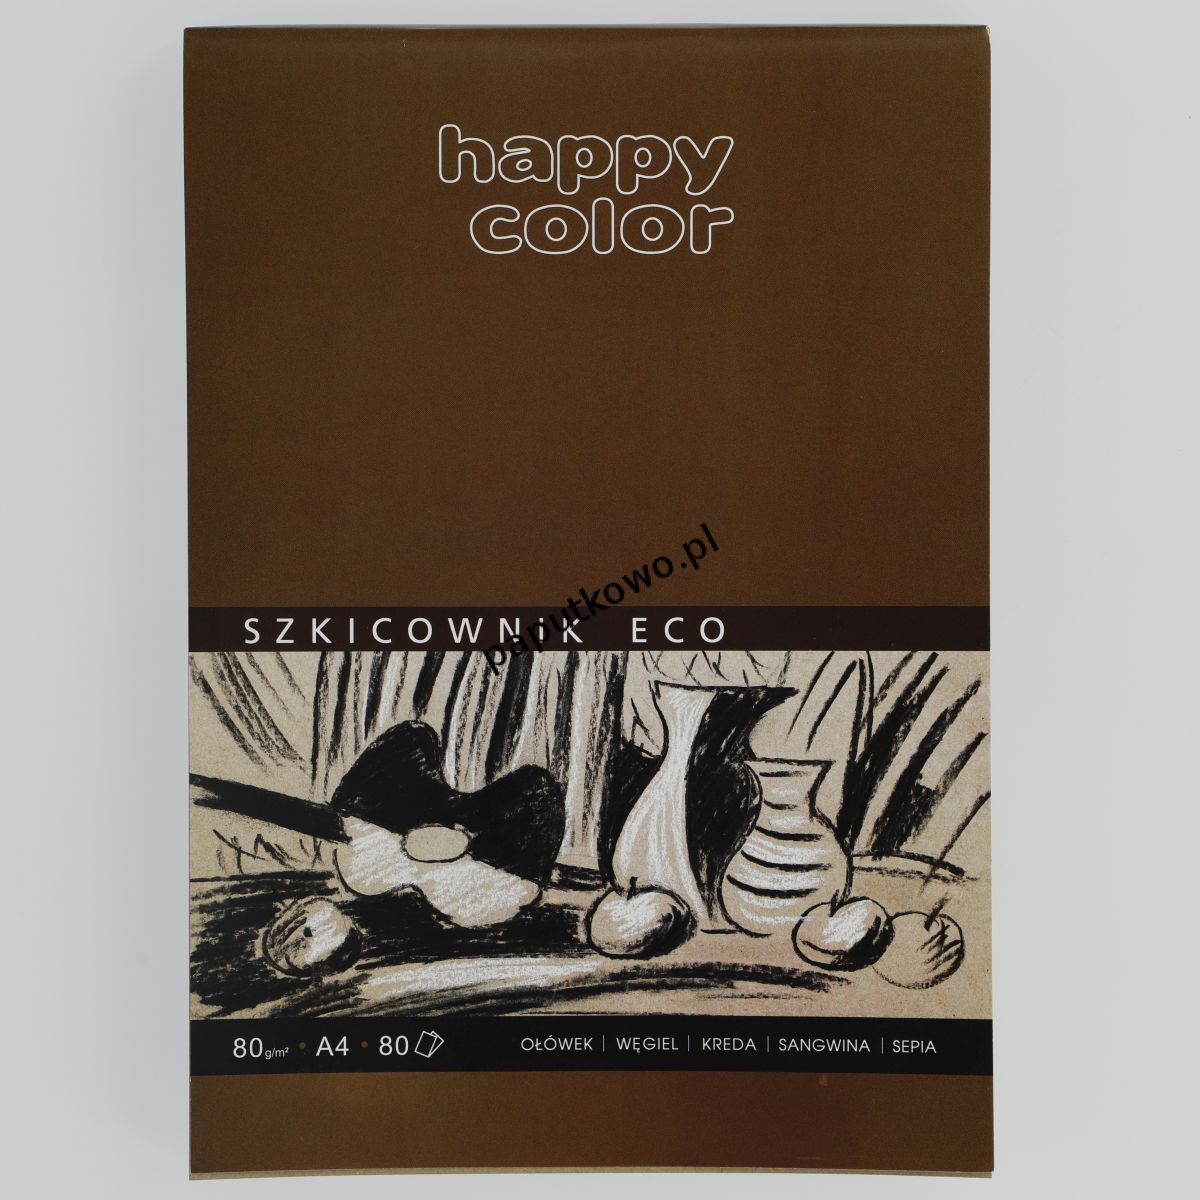 Blok artystyczny Gdd Happy Color szkicowy eko młody artysta A4 80g 80k (HA 3708 2030 A80)